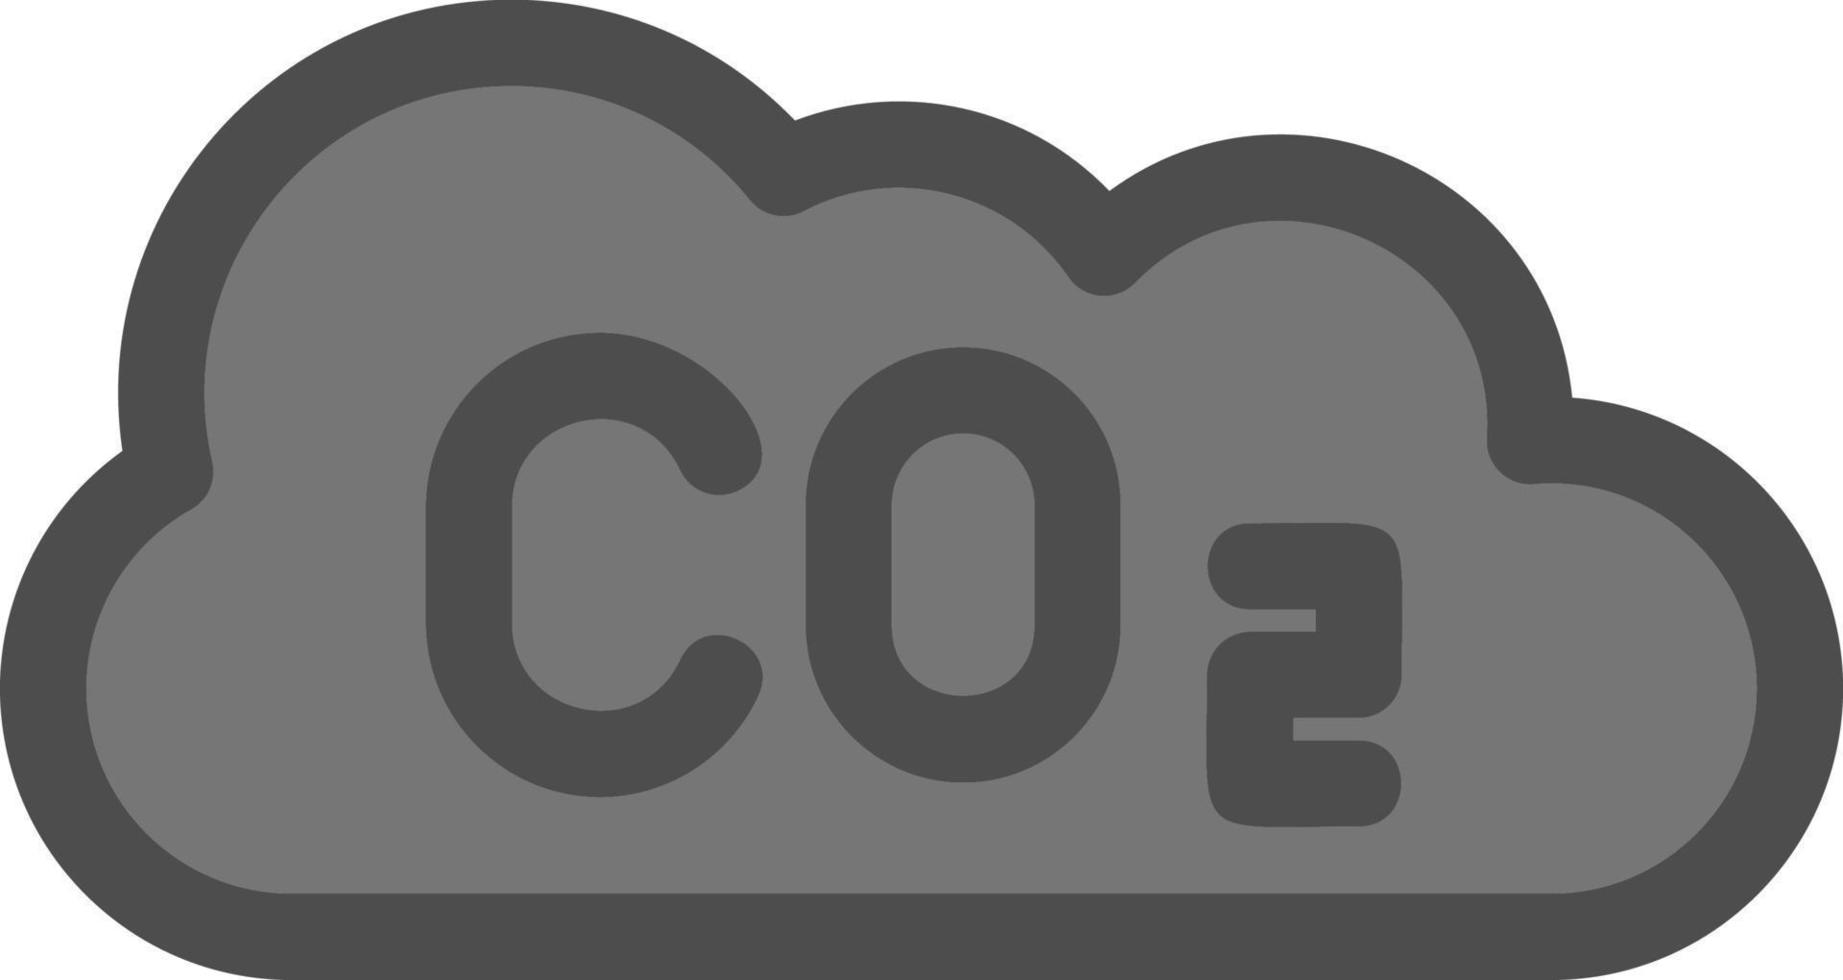 Co2 Glyph Icon vector